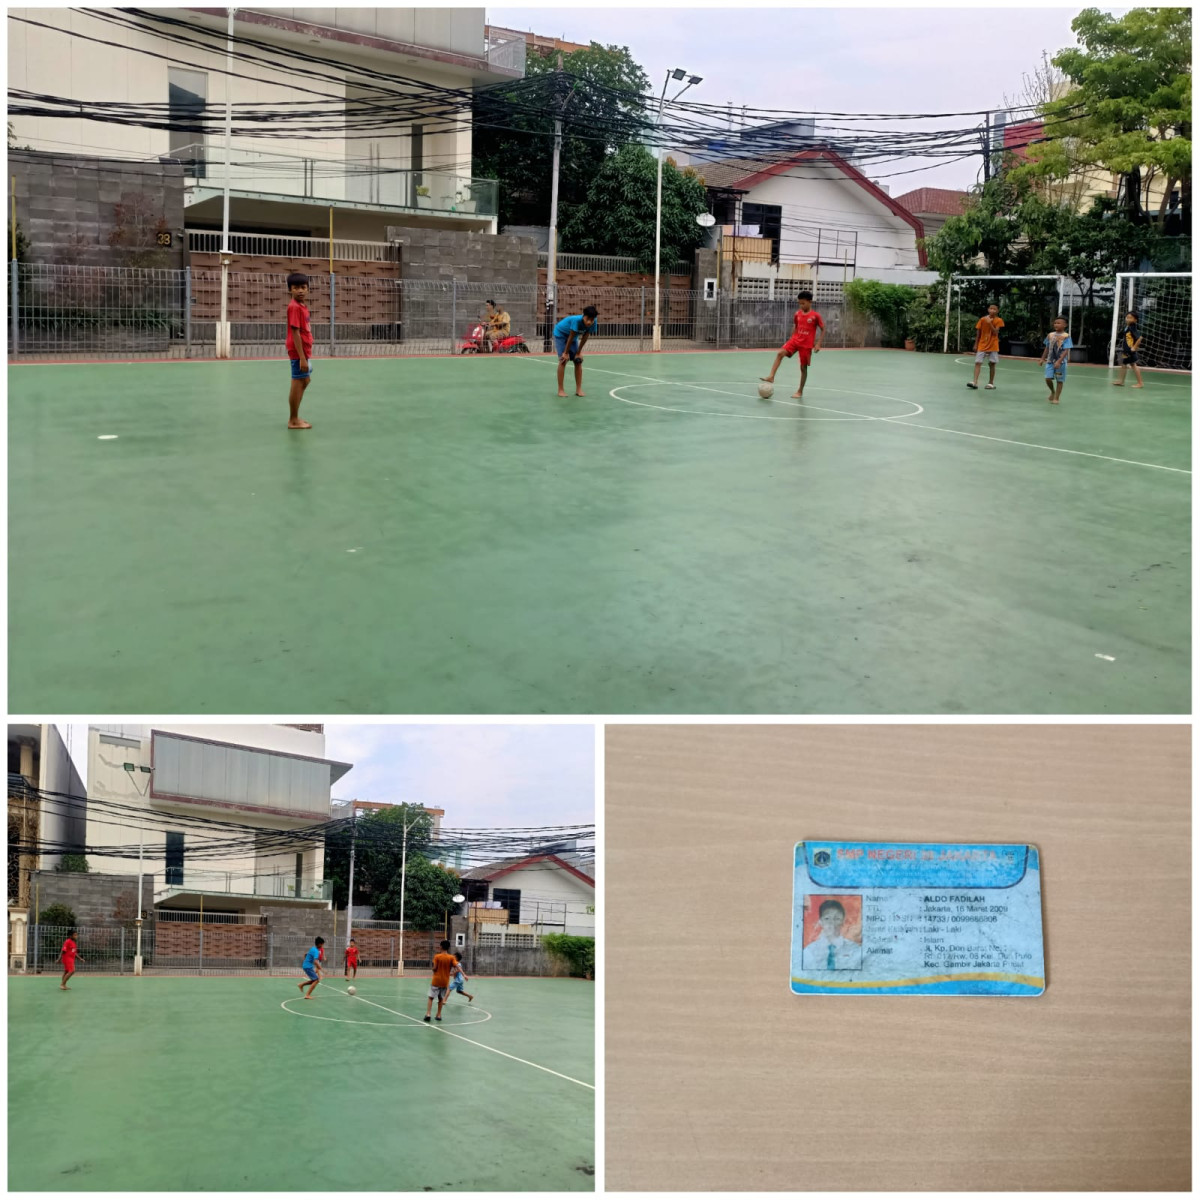 Anak anak dari Setia Kawan sedang bermain futsal di lapangan futsal RPTRA Mustika Cideng